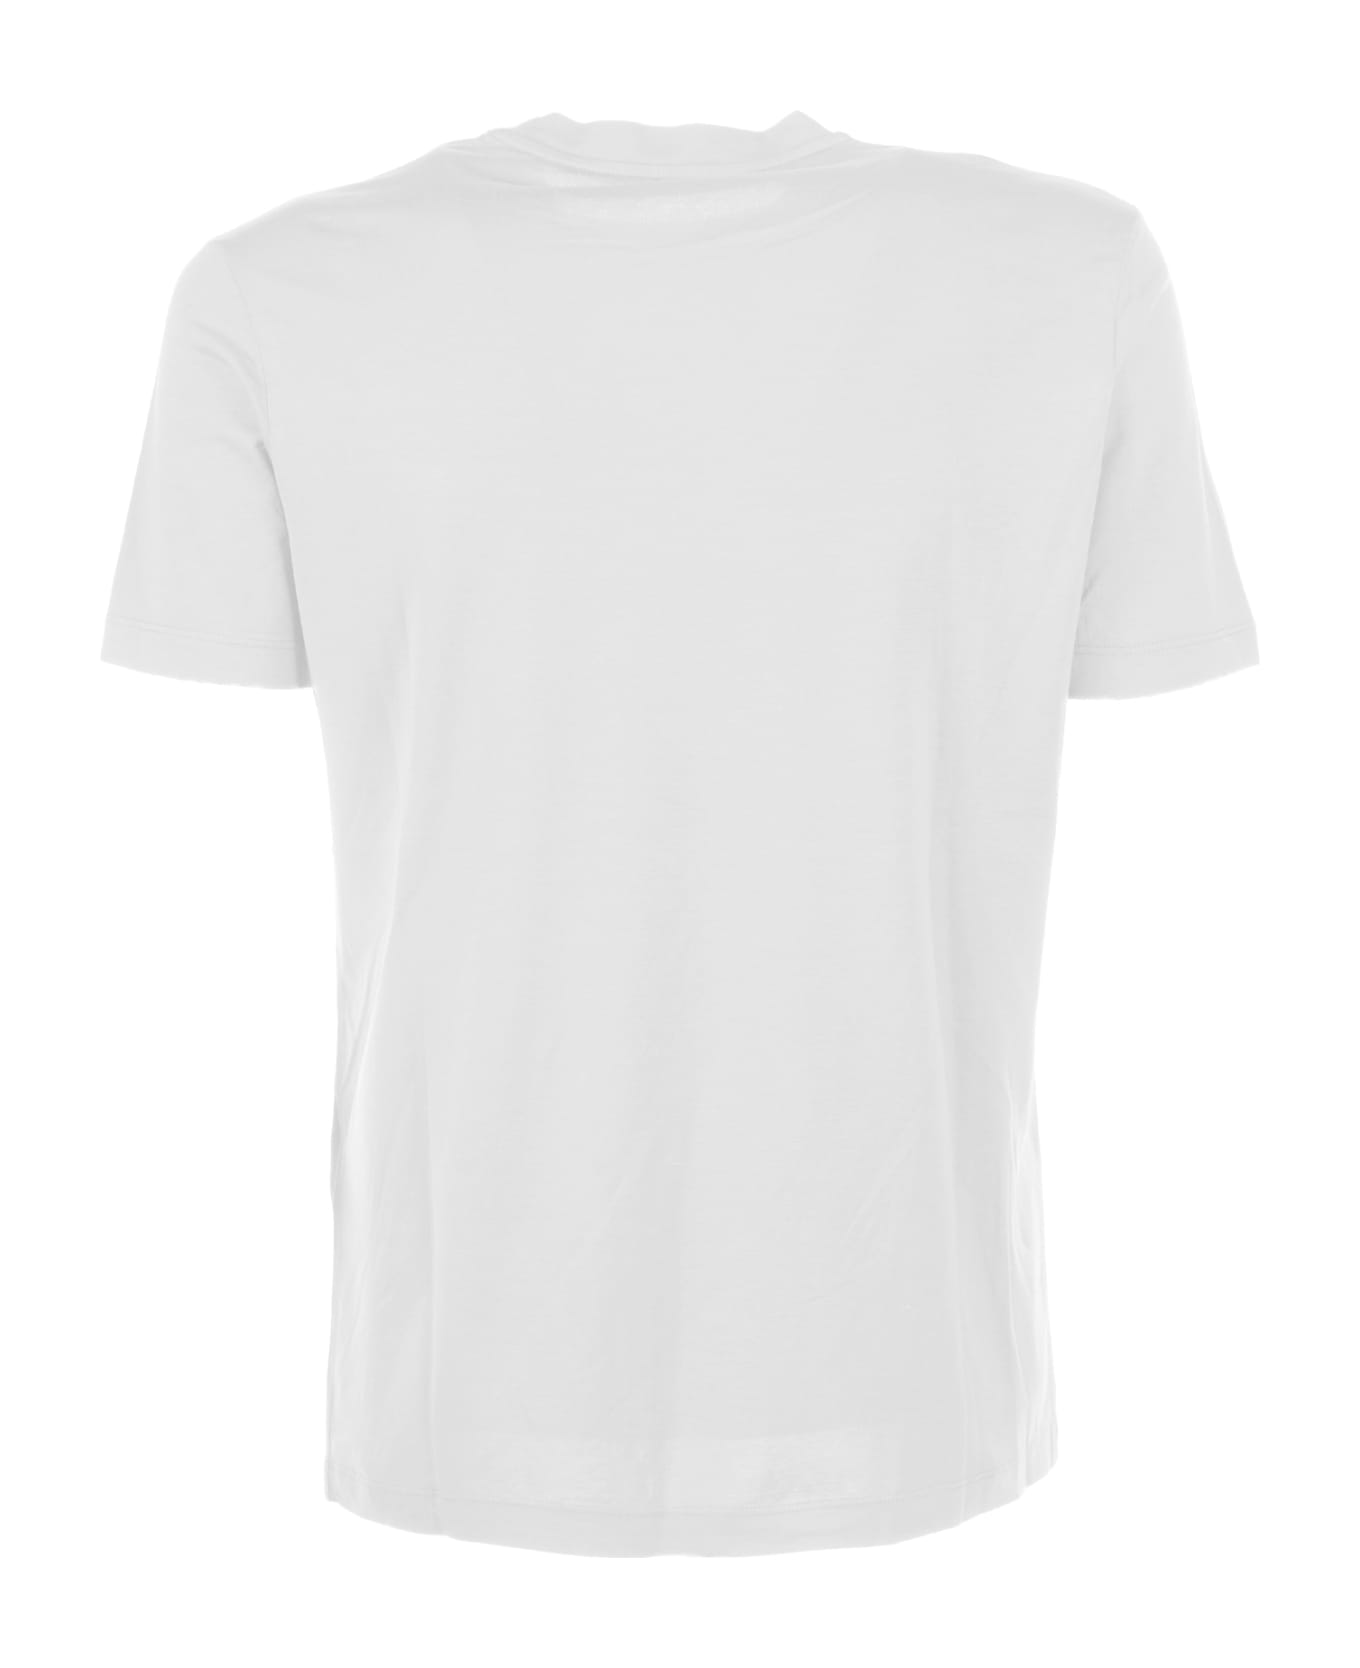 Altea White Cotton T-shirt - BIANCO OTTICO